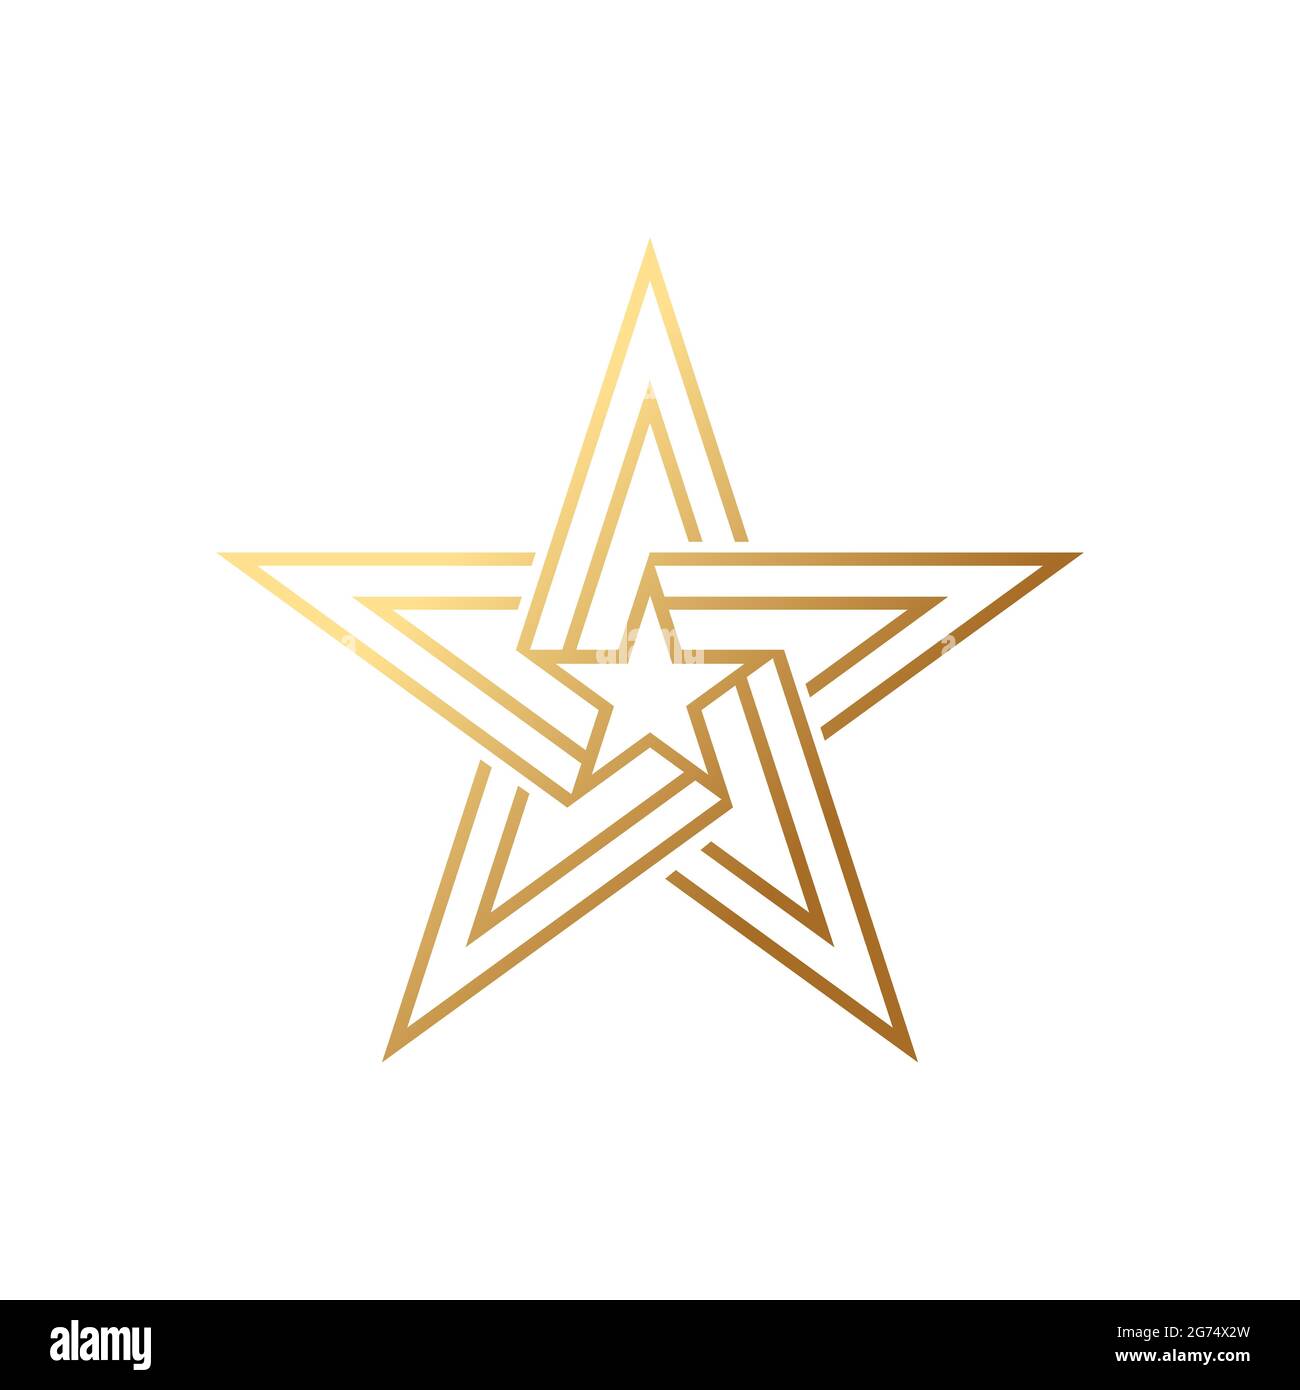 Modèle abstrait Star logo Icon Design Vector. Concept de logo Star simple et élégant. Modèle de dessin vectoriel d'icône de logo Star pour les entreprises, la marque Illustration de Vecteur